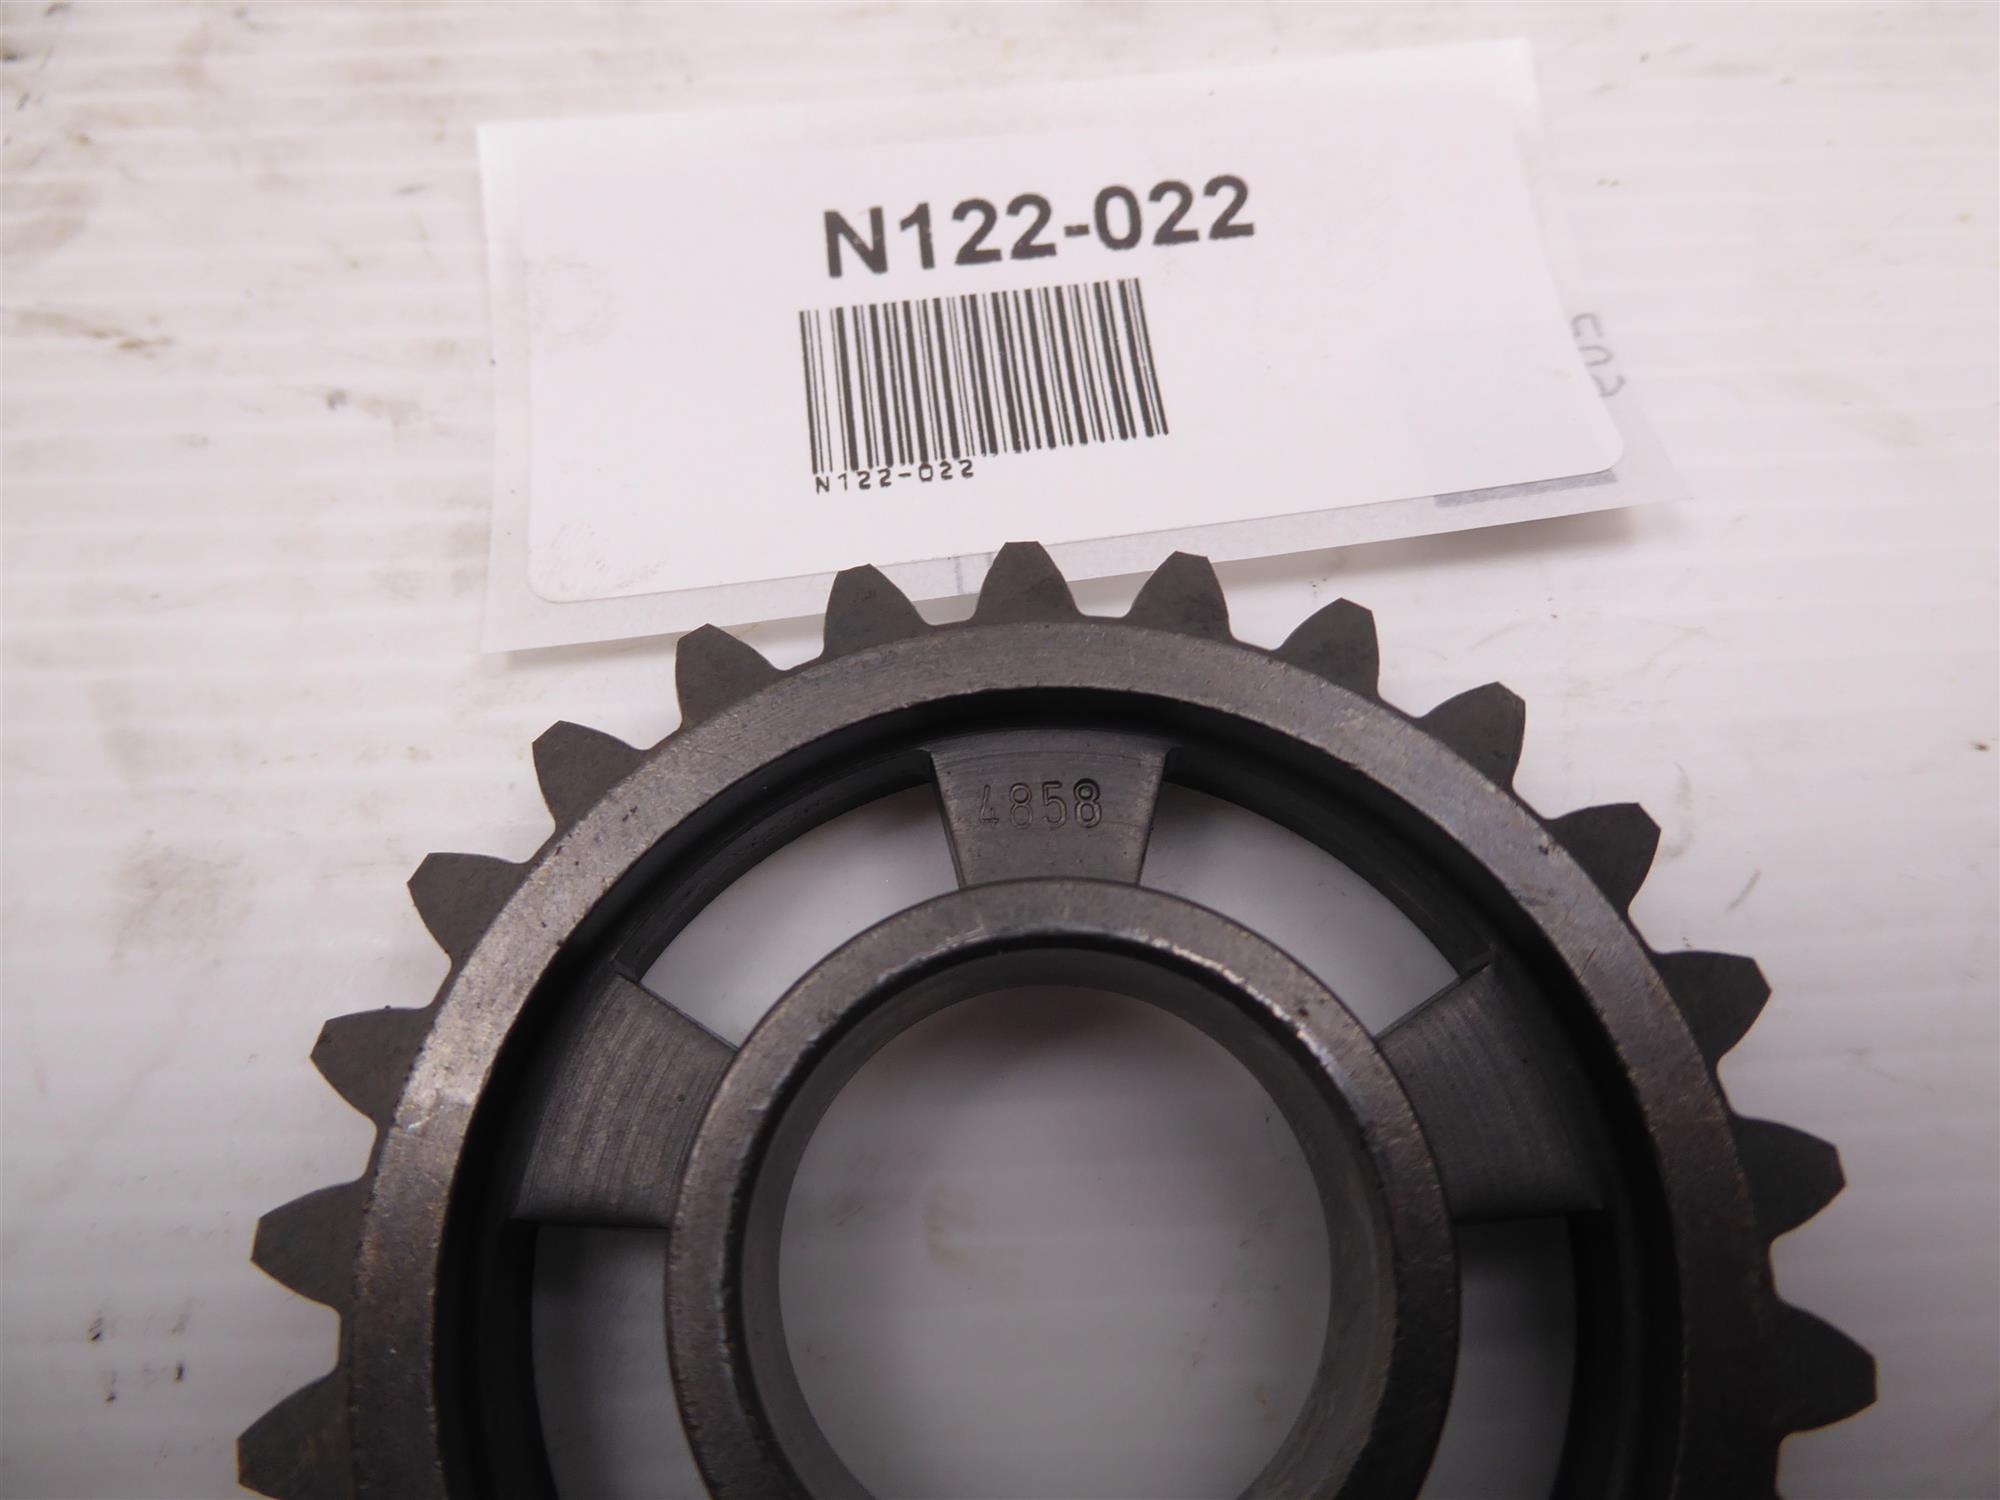 Aprilia RS125 Rotax 123 Gearbox Gearwheel 25Z 4858 AP0234858